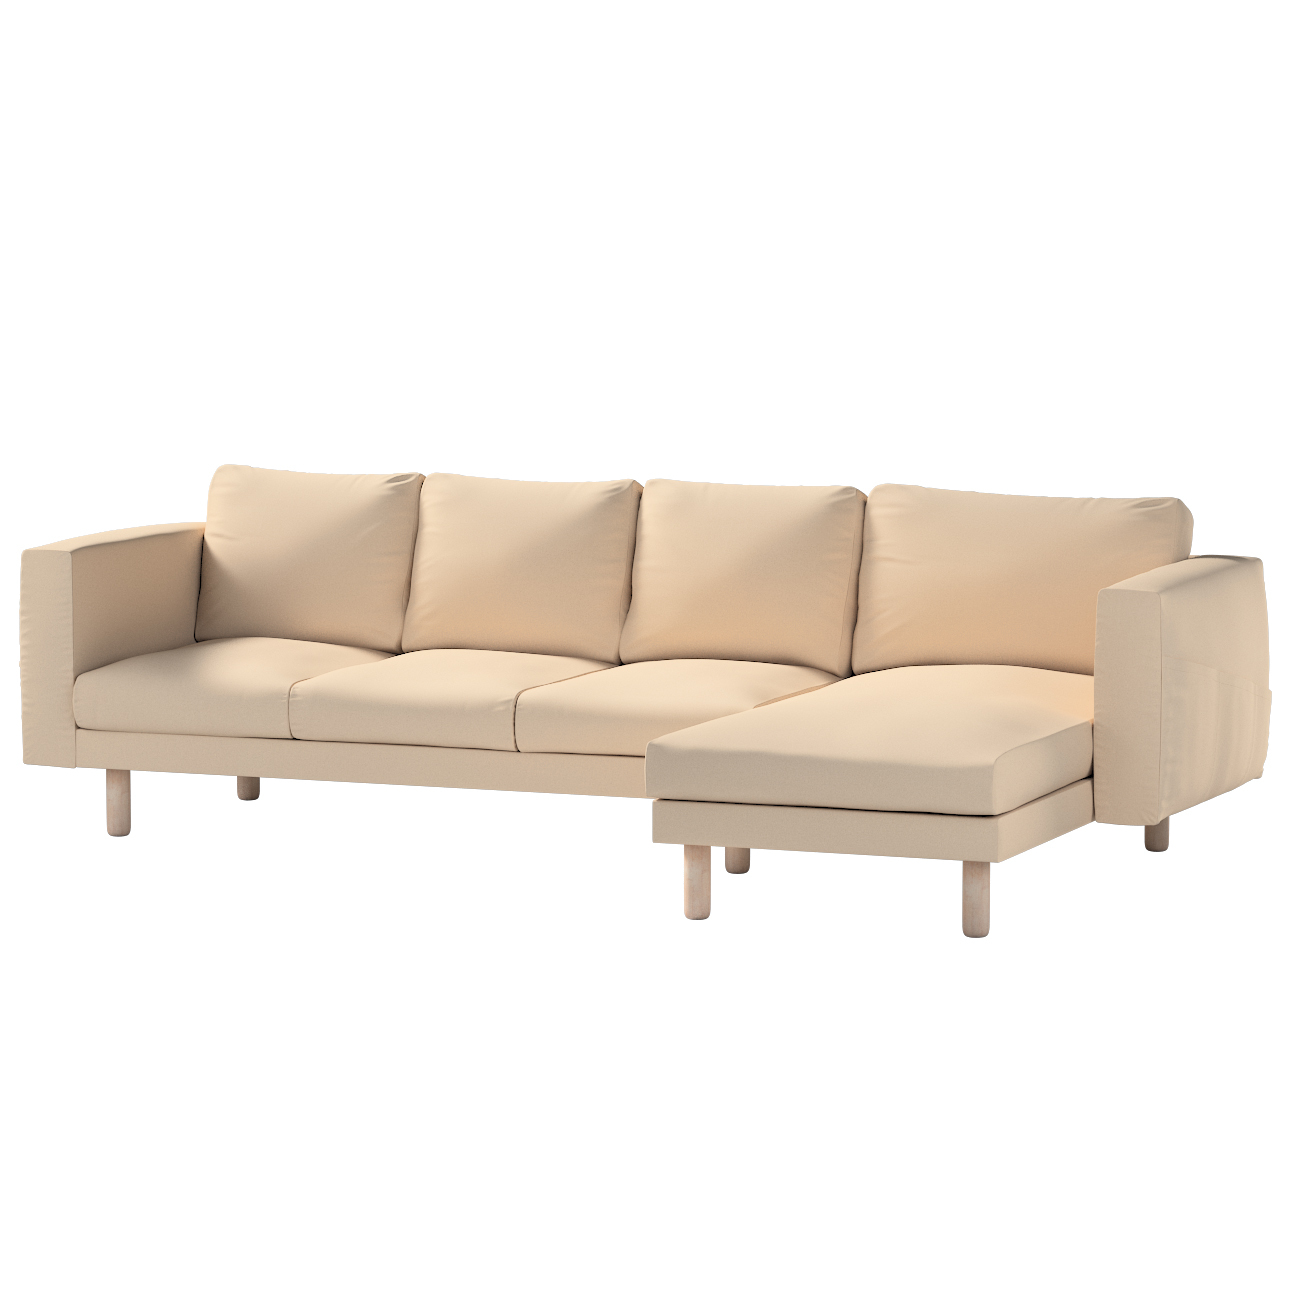 Bezug für Norsborg 4-Sitzer Sofa mit Recamiere, creme-beige, Norsborg Bezug günstig online kaufen